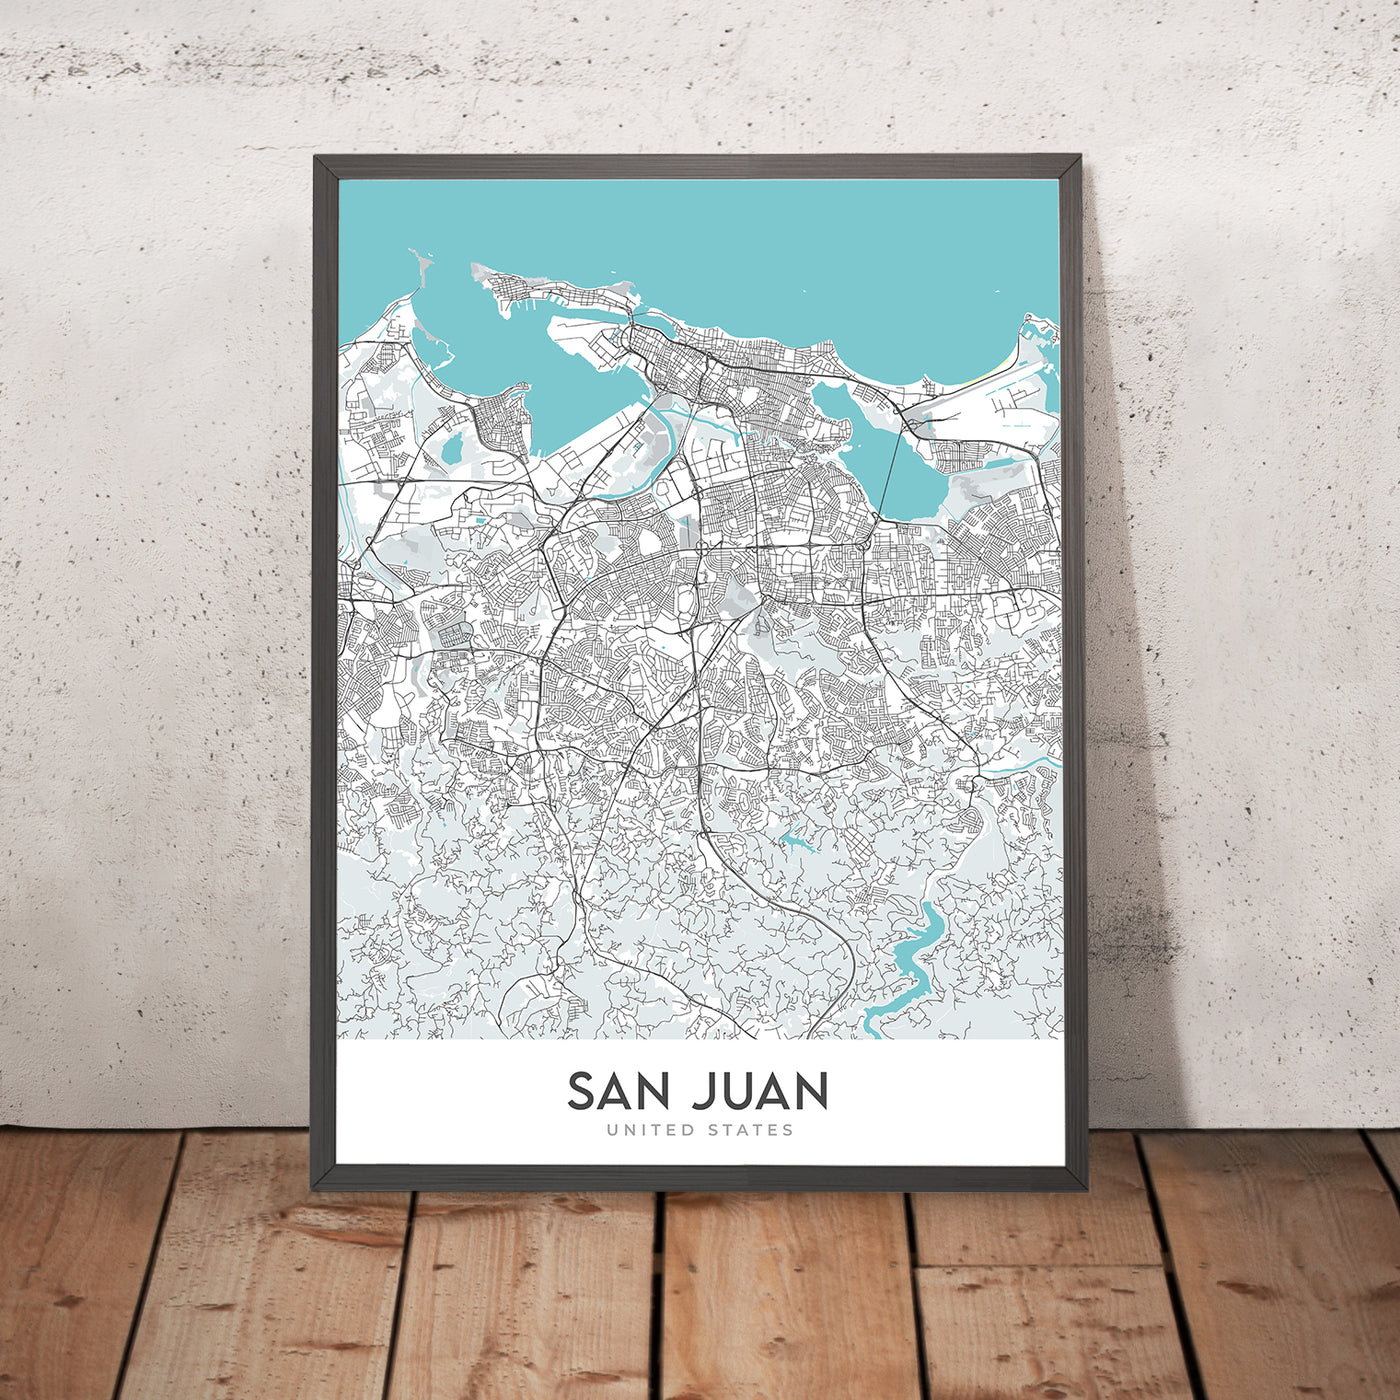 Mapa moderno de la ciudad de San Juan, Puerto Rico: Condado, Viejo San Juan, El Yunque, Castillo San Felipe del Morro, Castillo San Cristóbal